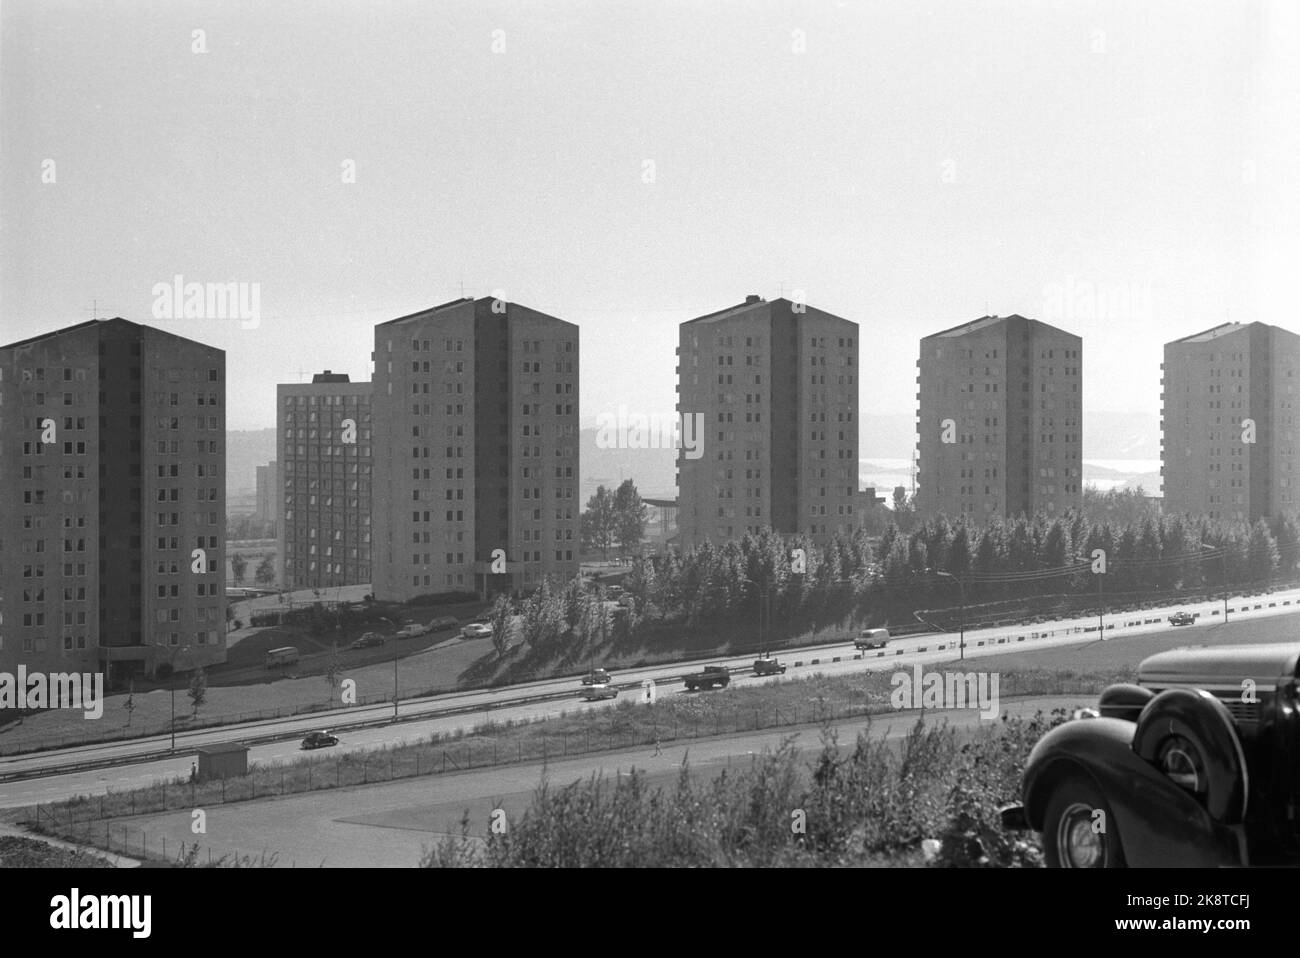 Bjerke, Oslo, 19710904. Refstadsvingen 1-7, 2, fünf-Punkt-Häuser Blöcke für OBOS im Jahr 1962 gebaut. Die Blöcke bestehen aus Stahlbeton auf 12 Etagen. Sie sind mit schrägen Decken und weitläufigen Fenstern ausgestattet. Architekten: Bernt Heiberg und Ola Mørk Sandvik. Foto: Ivar Aaserud / Aktuell / NTB Stockfoto